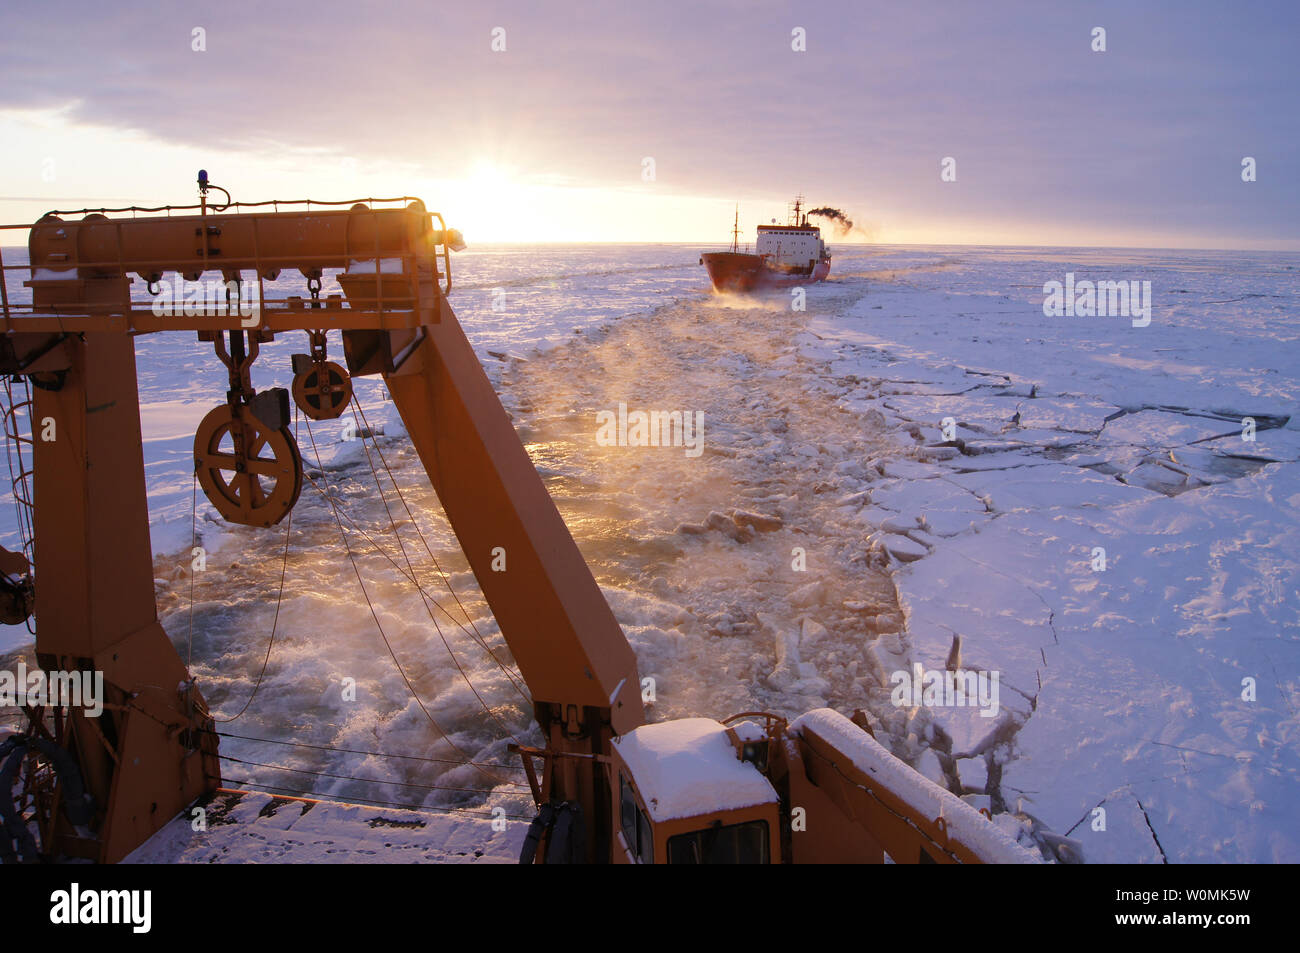 La petroliera russa renda segue un percorso fatto di ghiaccio dall'equipaggio dell'U.S. Guardacoste Healy circa 250 miglia a sud di nome, Alaska nel mare di Bering su Gennaio 6, 2012. Le navi sono in transito attraverso il ghiaccio fino a cinque metri di spessore in questa zona. La petroliera renda sta portando 1.3 milioni di galloni di carburante per il nome, come la città non ha ricevuto il suo ultimo invernali pre-imbarco a causa di tempeste. UPI/Benjamin Nocerini/STATI UNITI Coast Guard Foto Stock